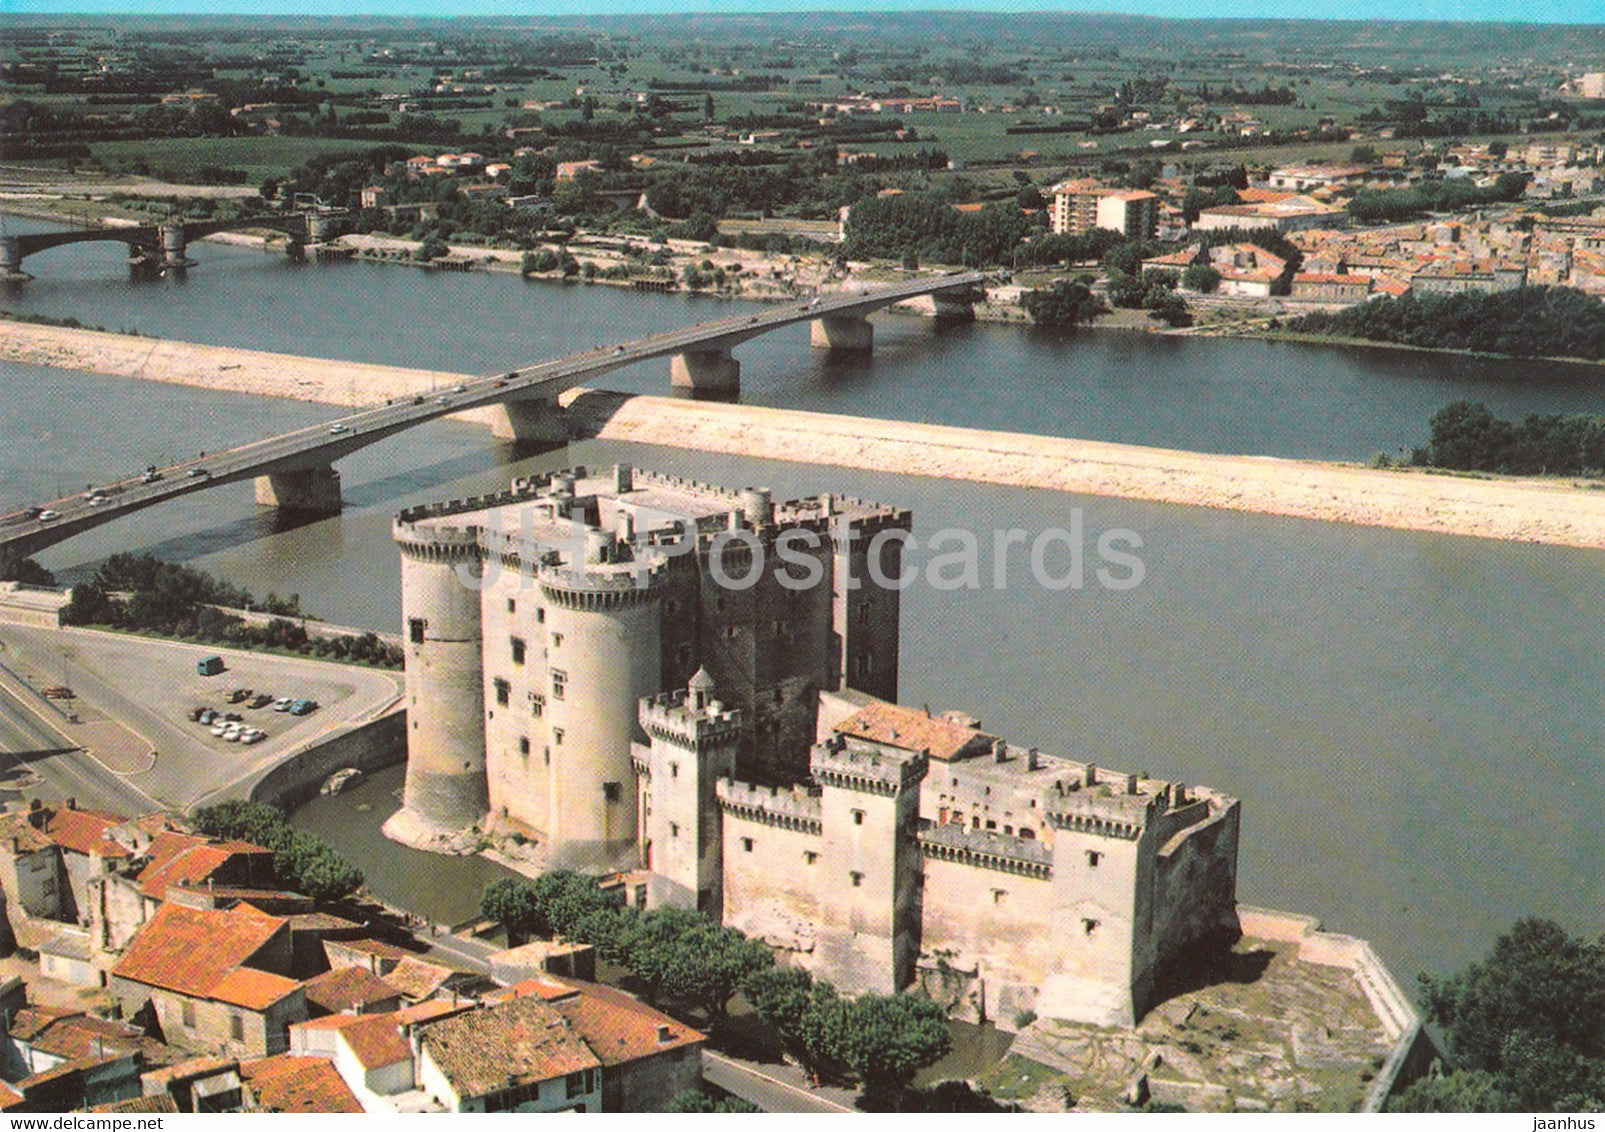 Tarascon - Vue Aerienne - Le Chateau du Roi Rene et le pont sur le Rhone - France - unused - JH Postcards